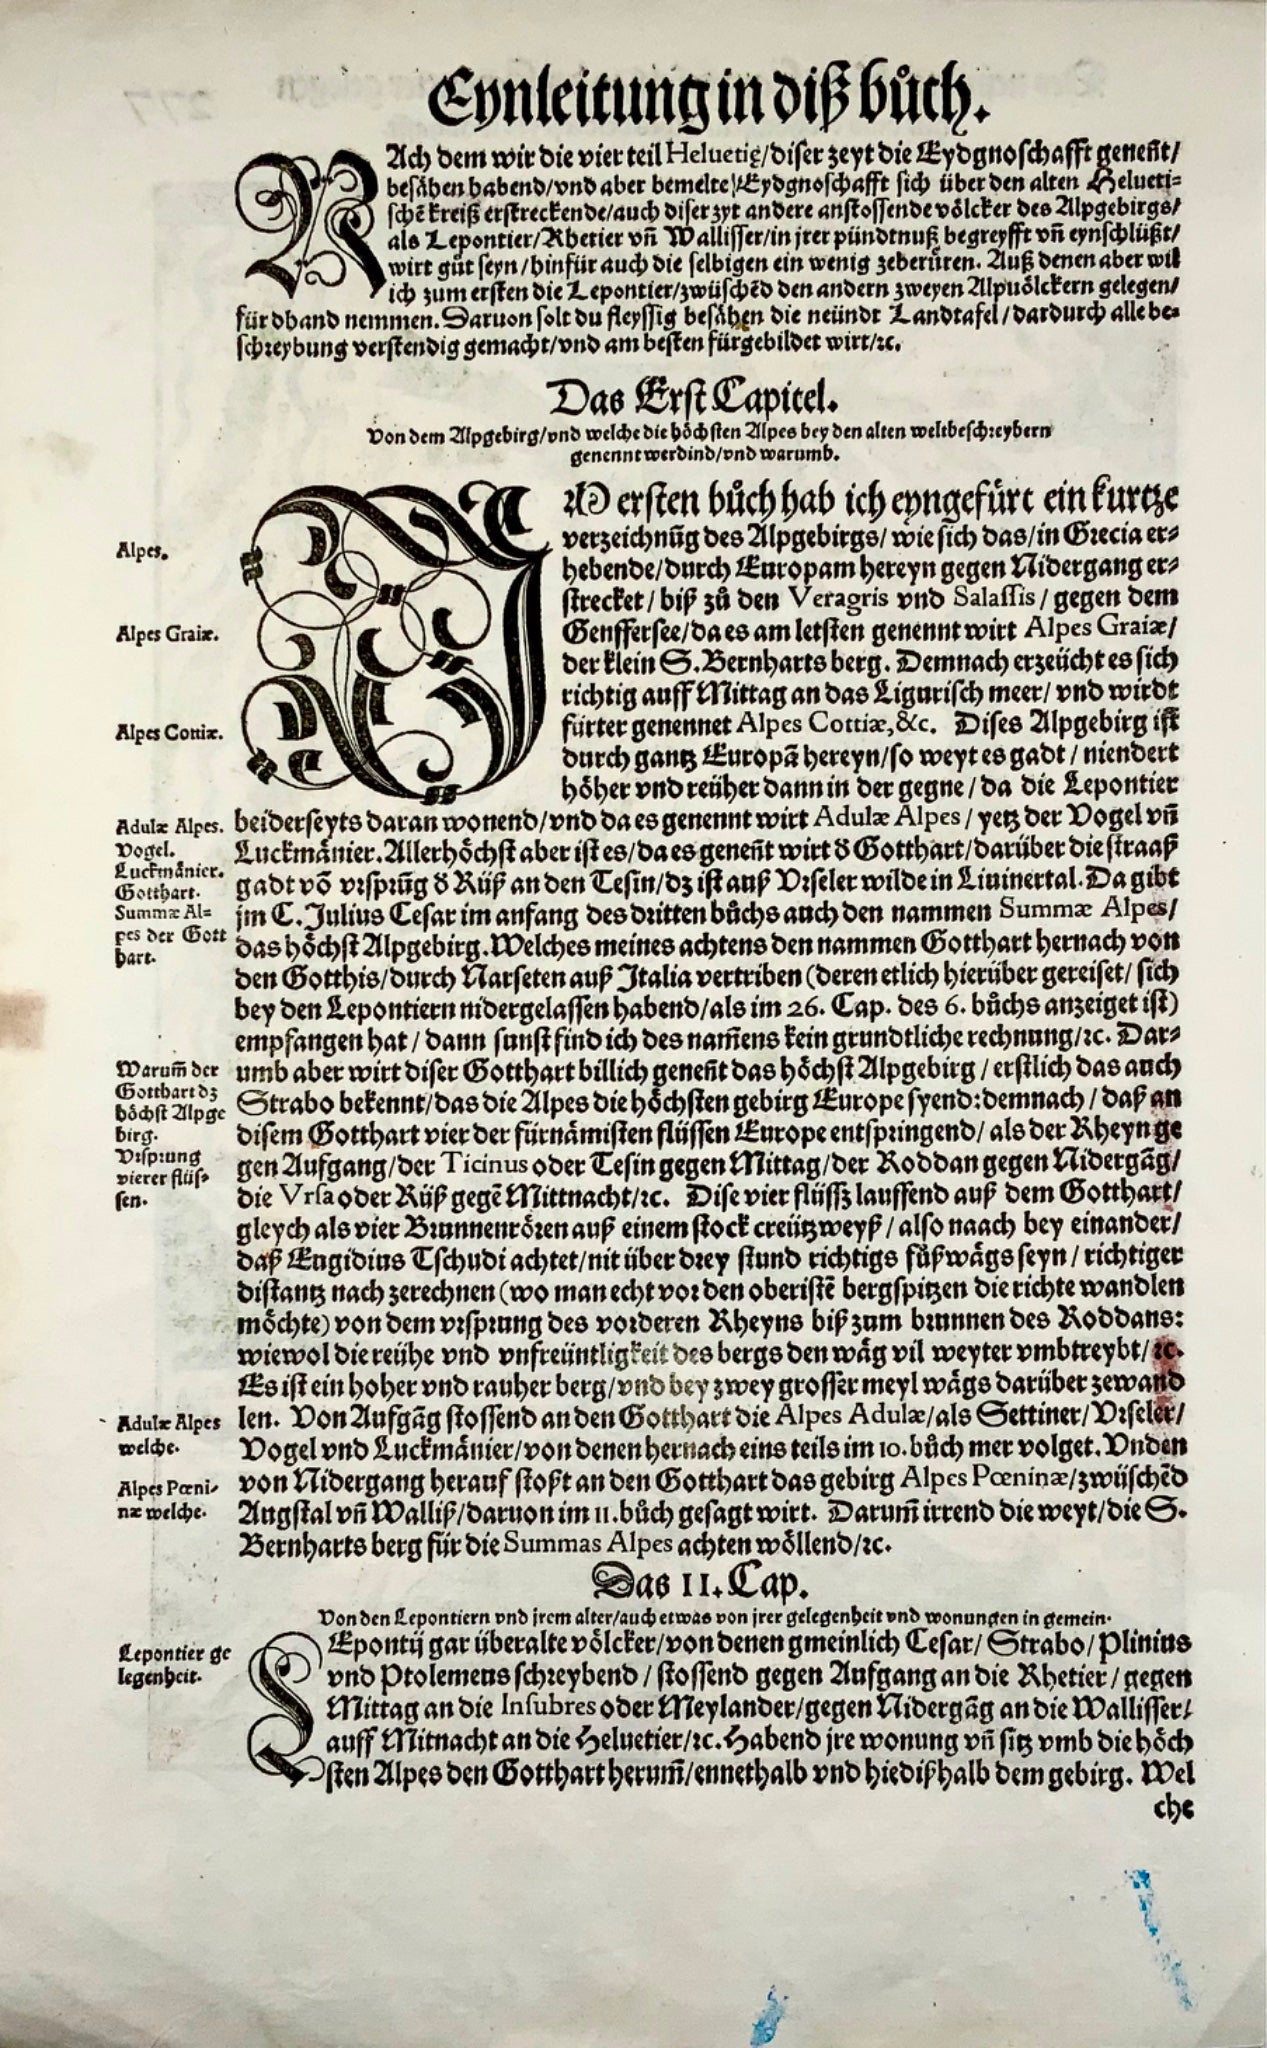 1548 Gio. Stumpf, Svizzera meridionale, Ticino, Vallese, carta geografica xilografica in folio